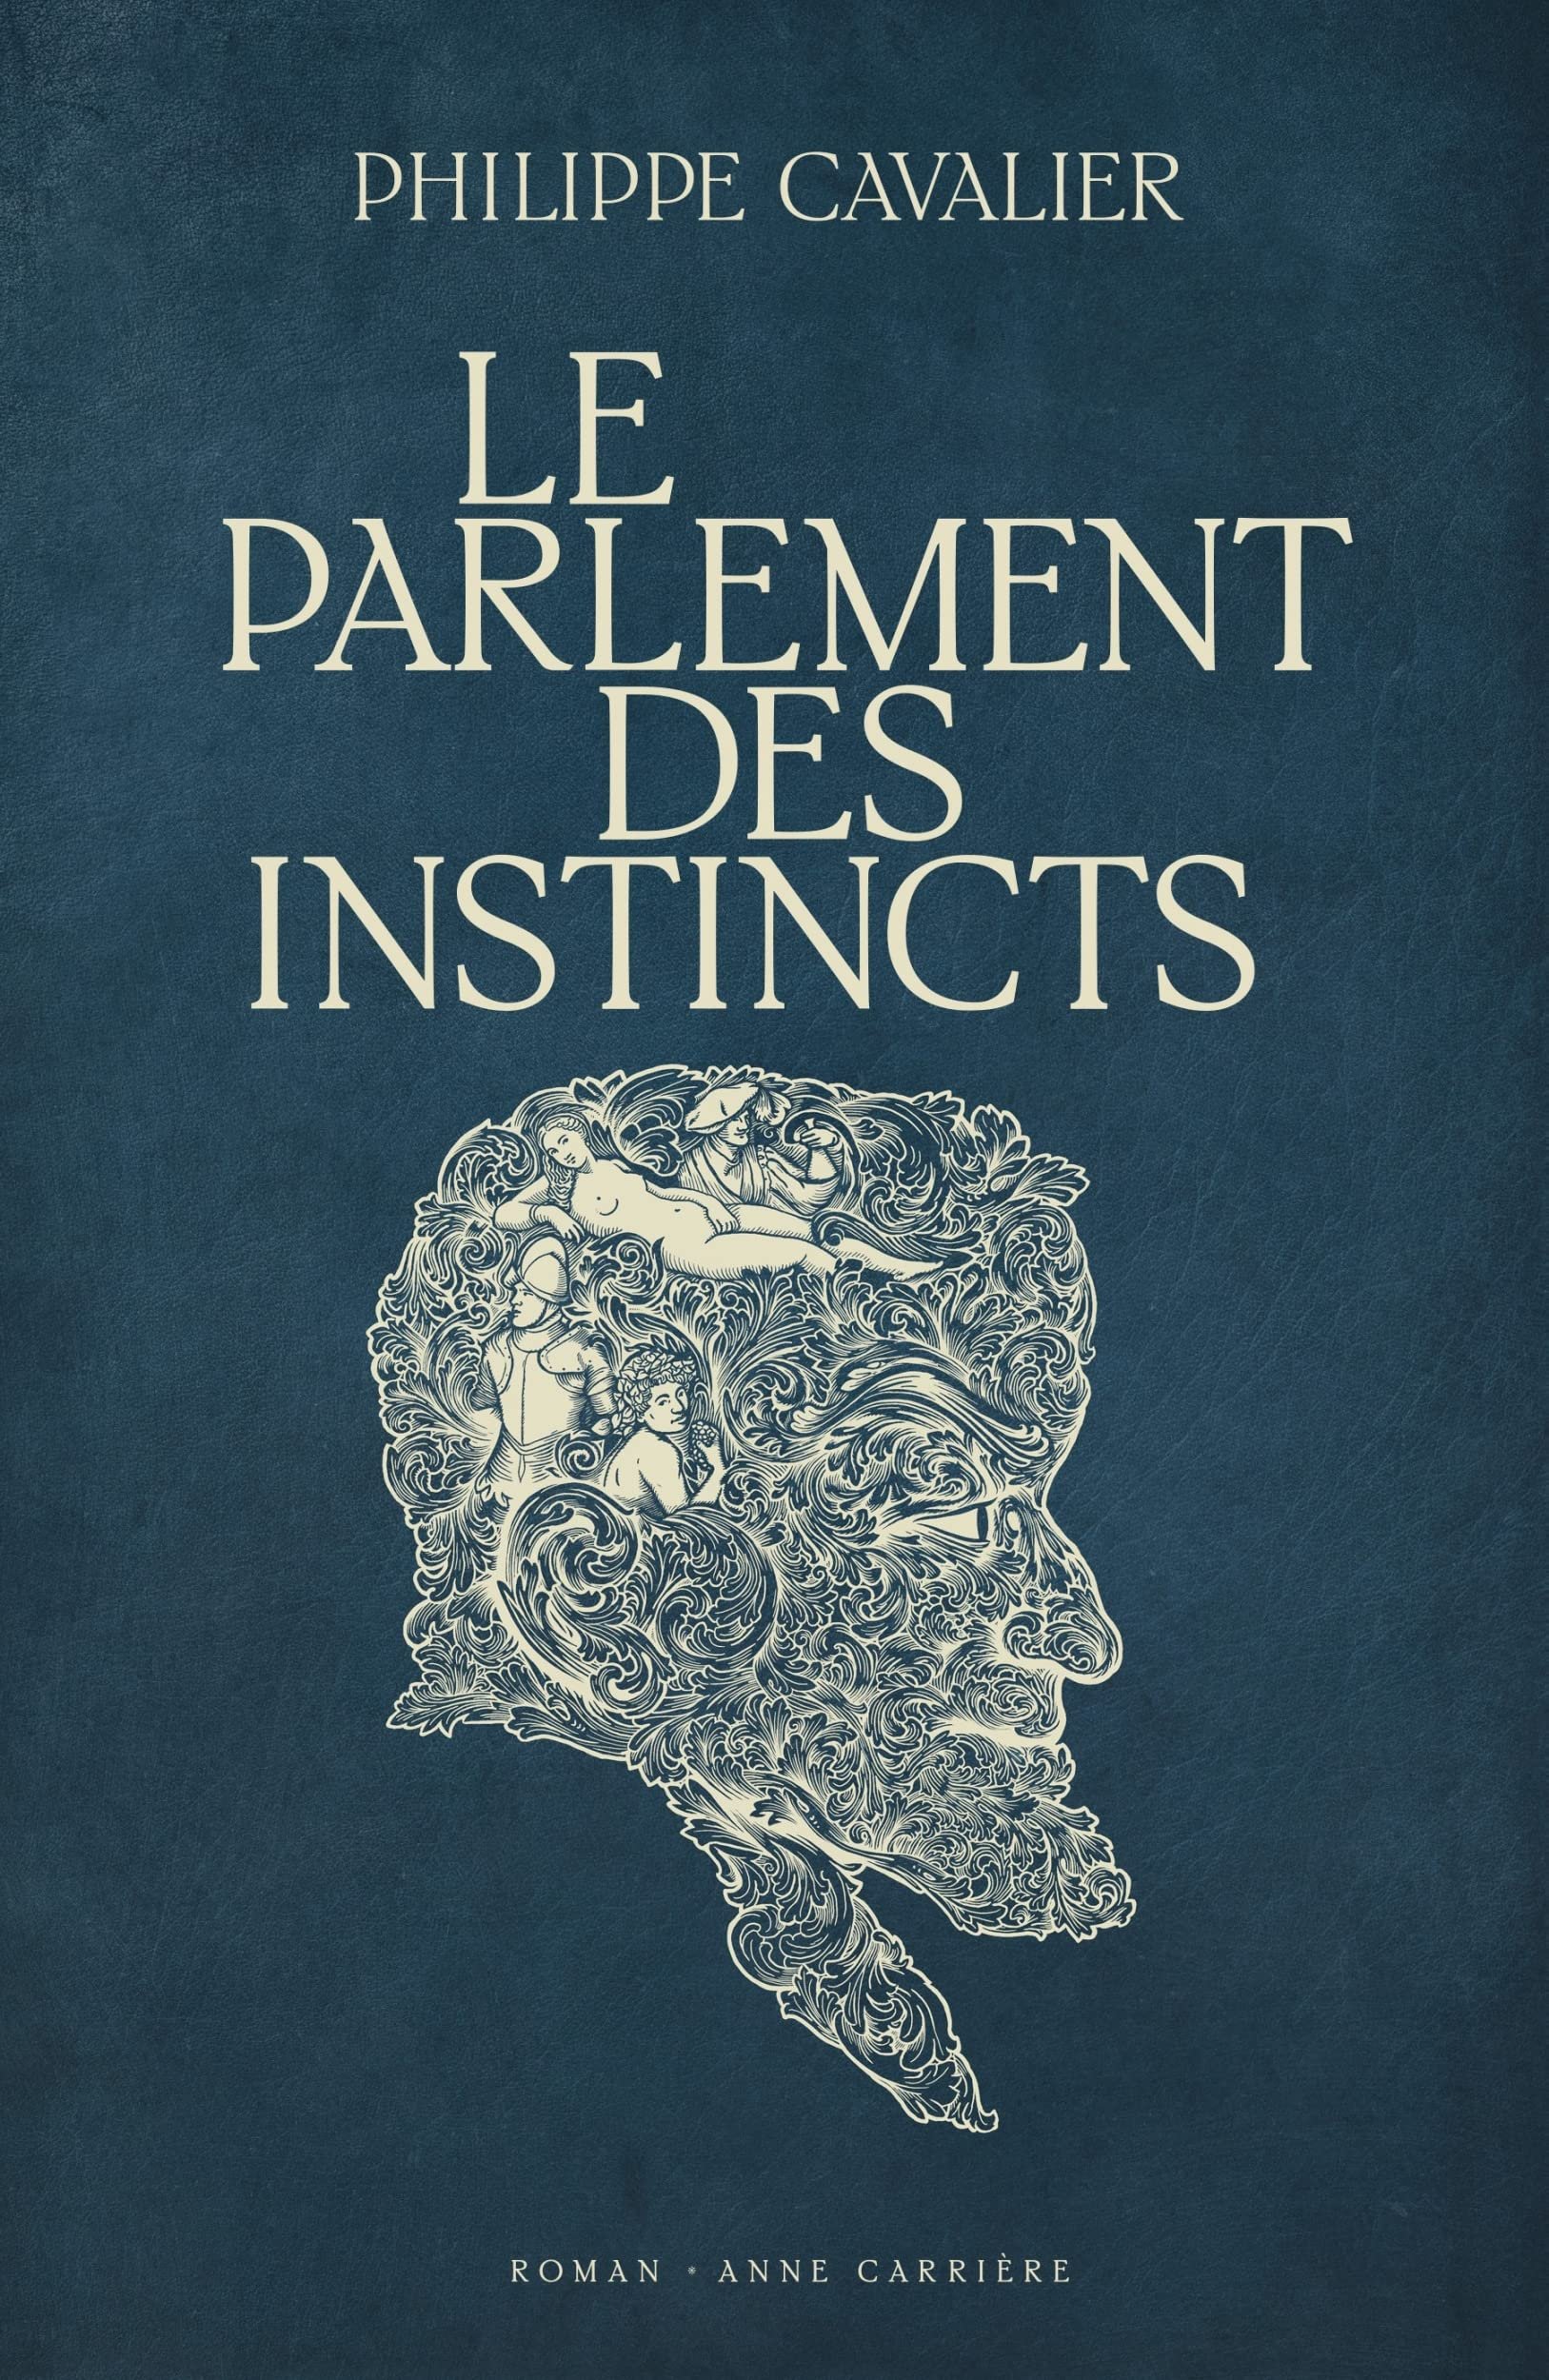 Philippe Cavalier – Le parlement des instincts